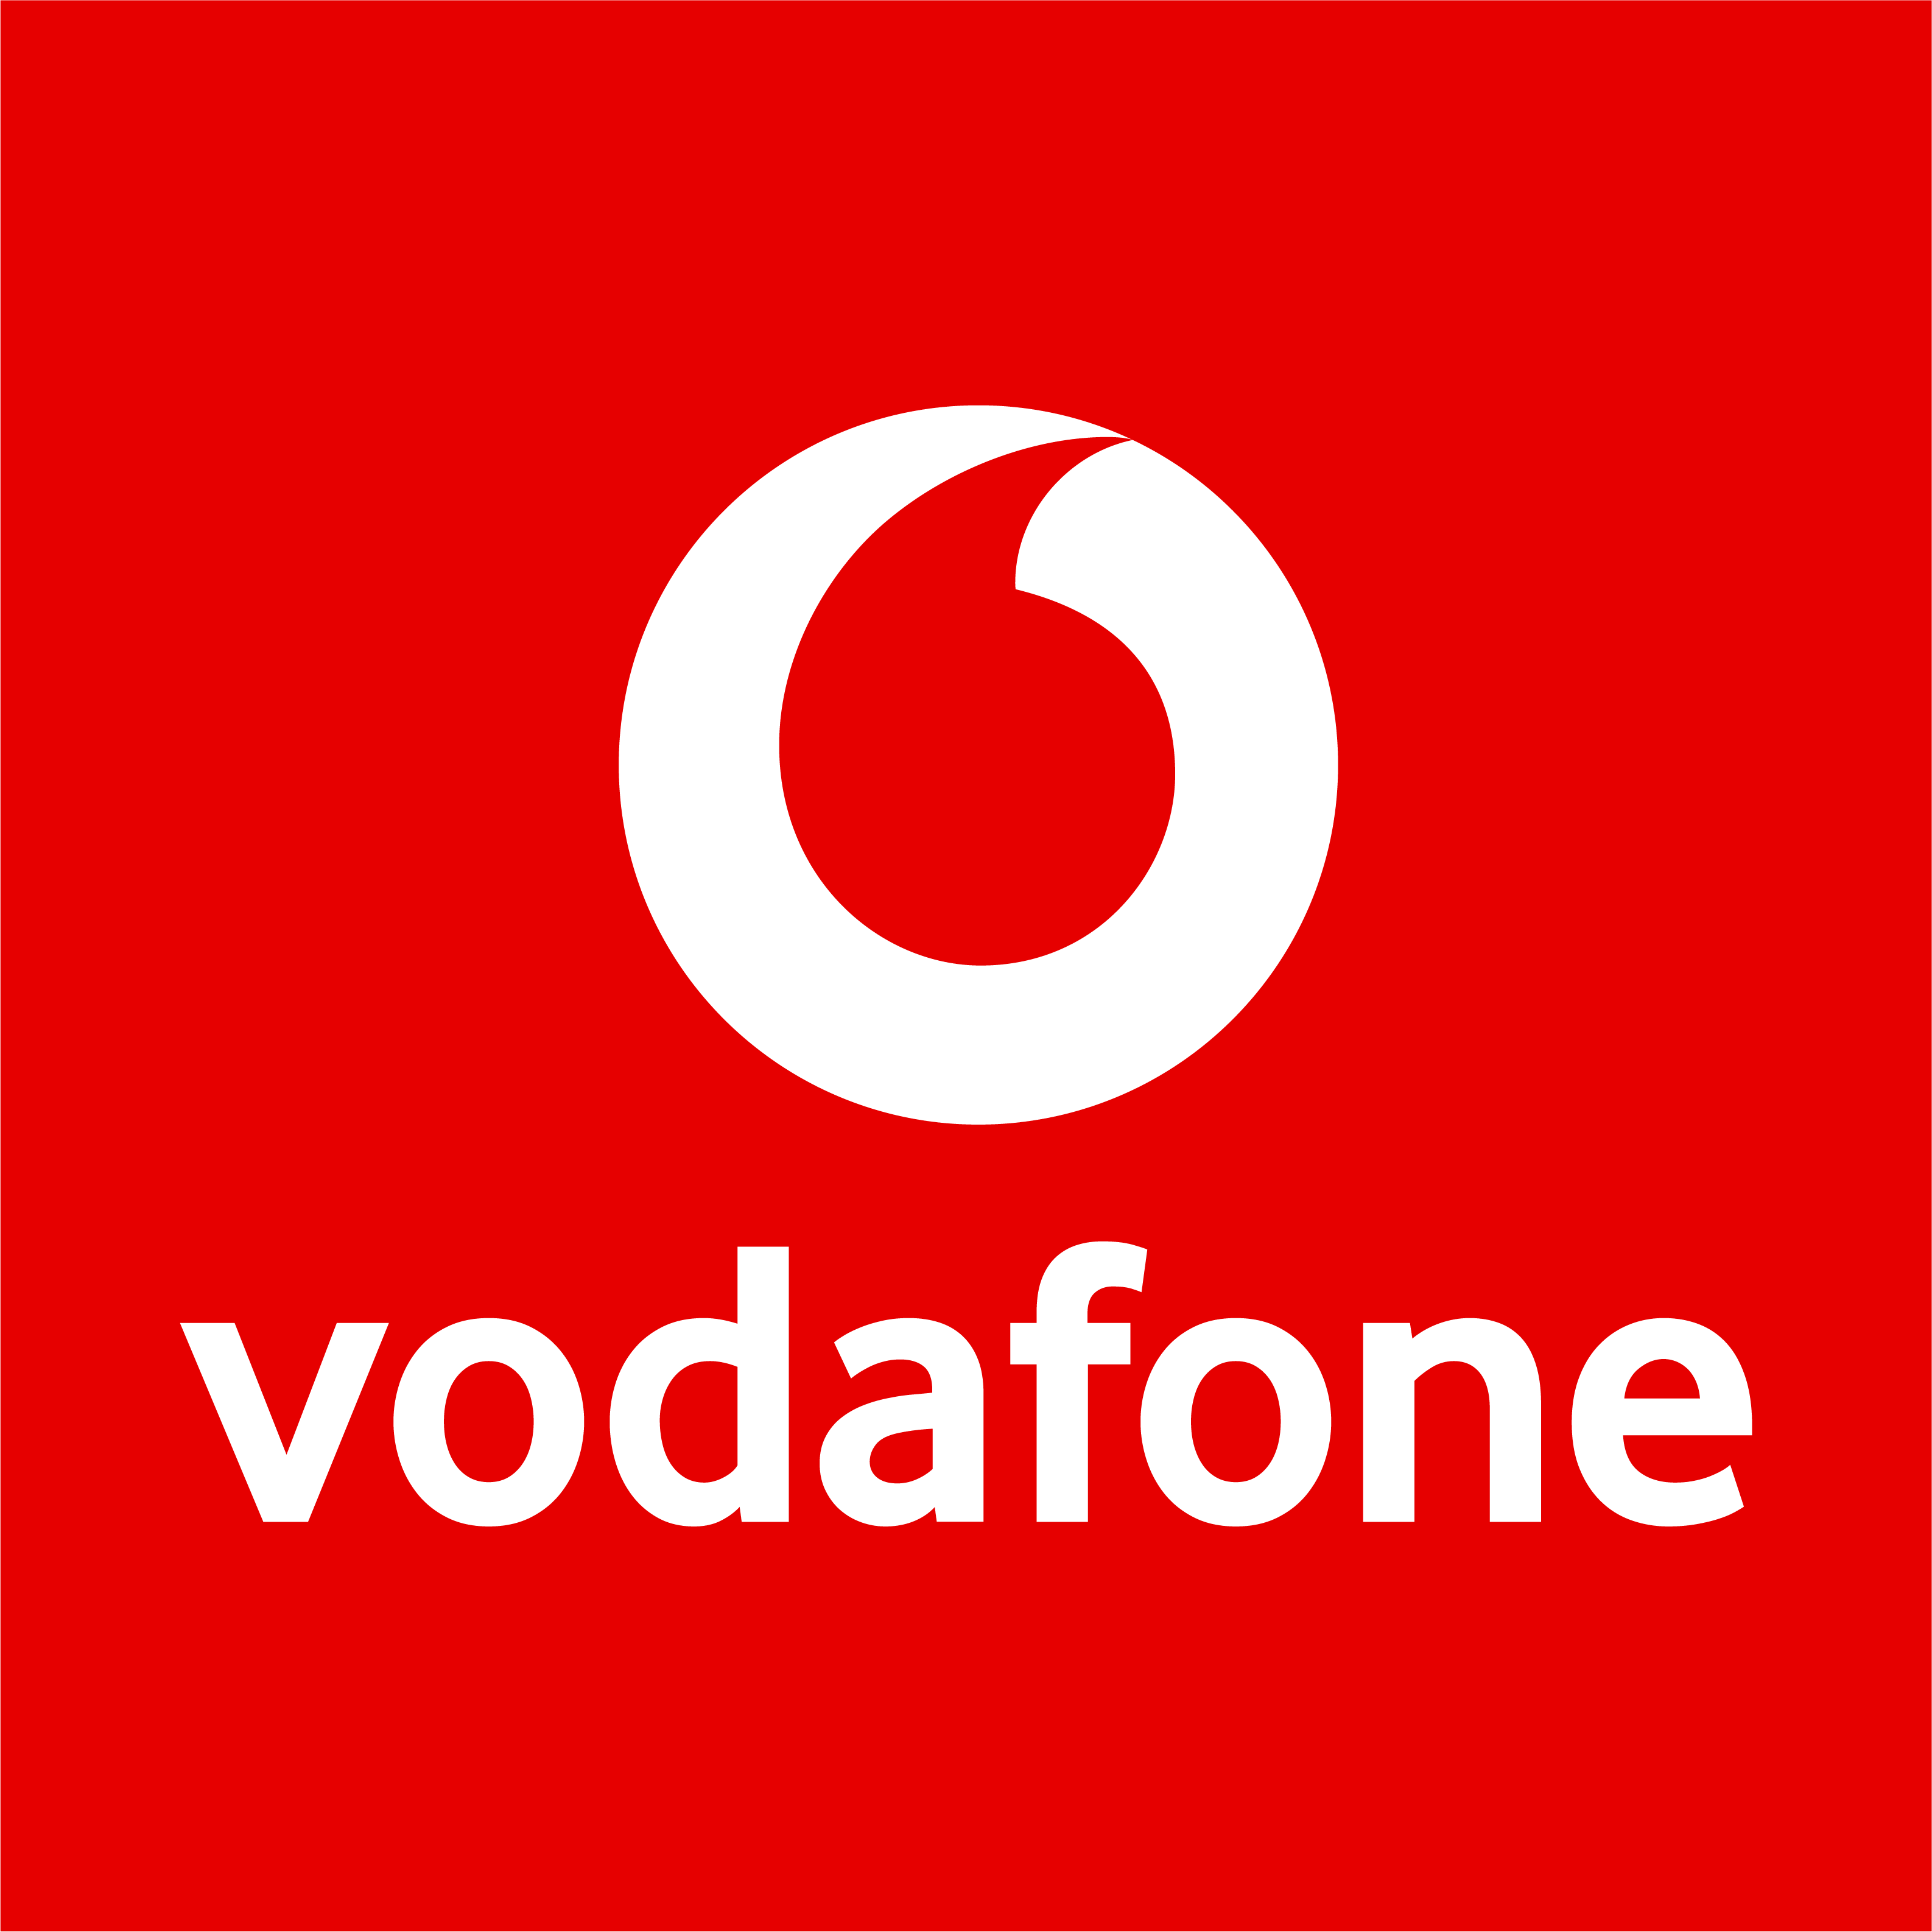 Vodafone Shop in Frankfurt am Main - Logo